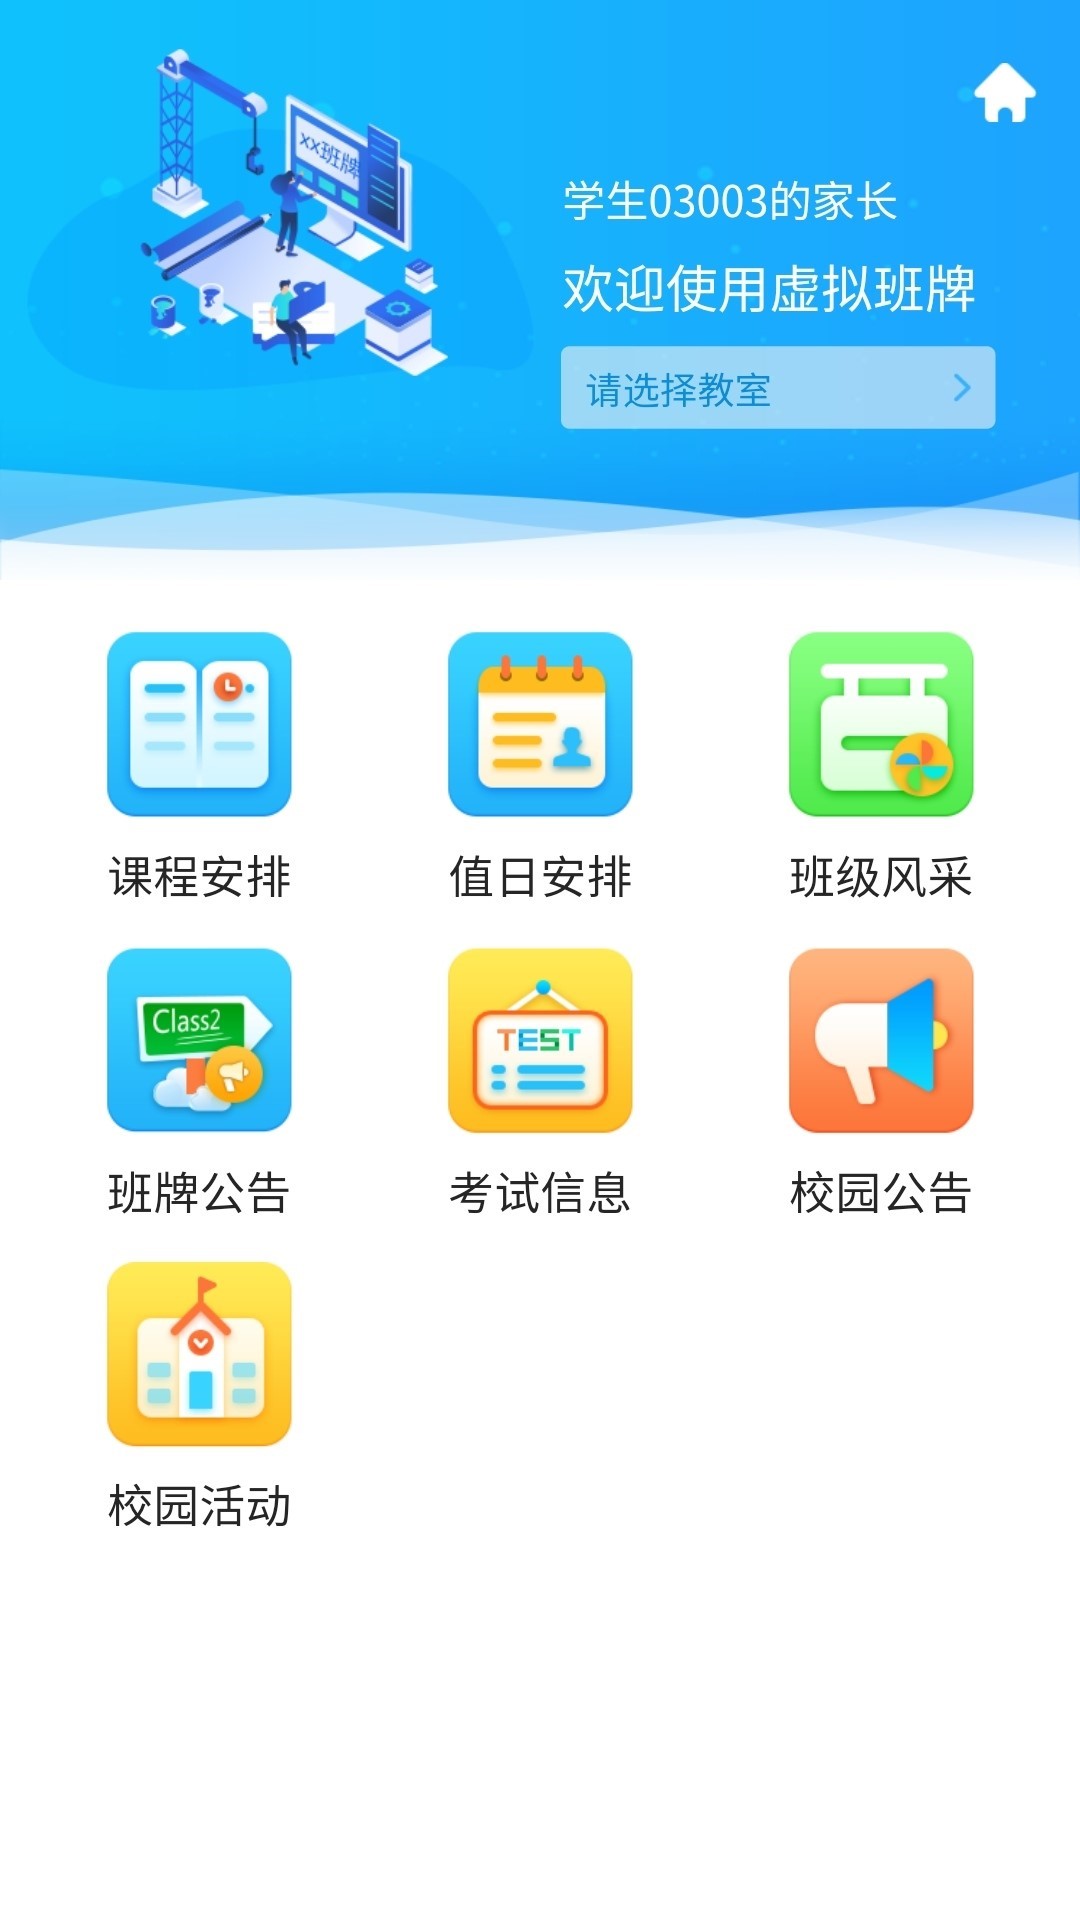 蓝鸽智慧校园通app 5.1.3 截图2